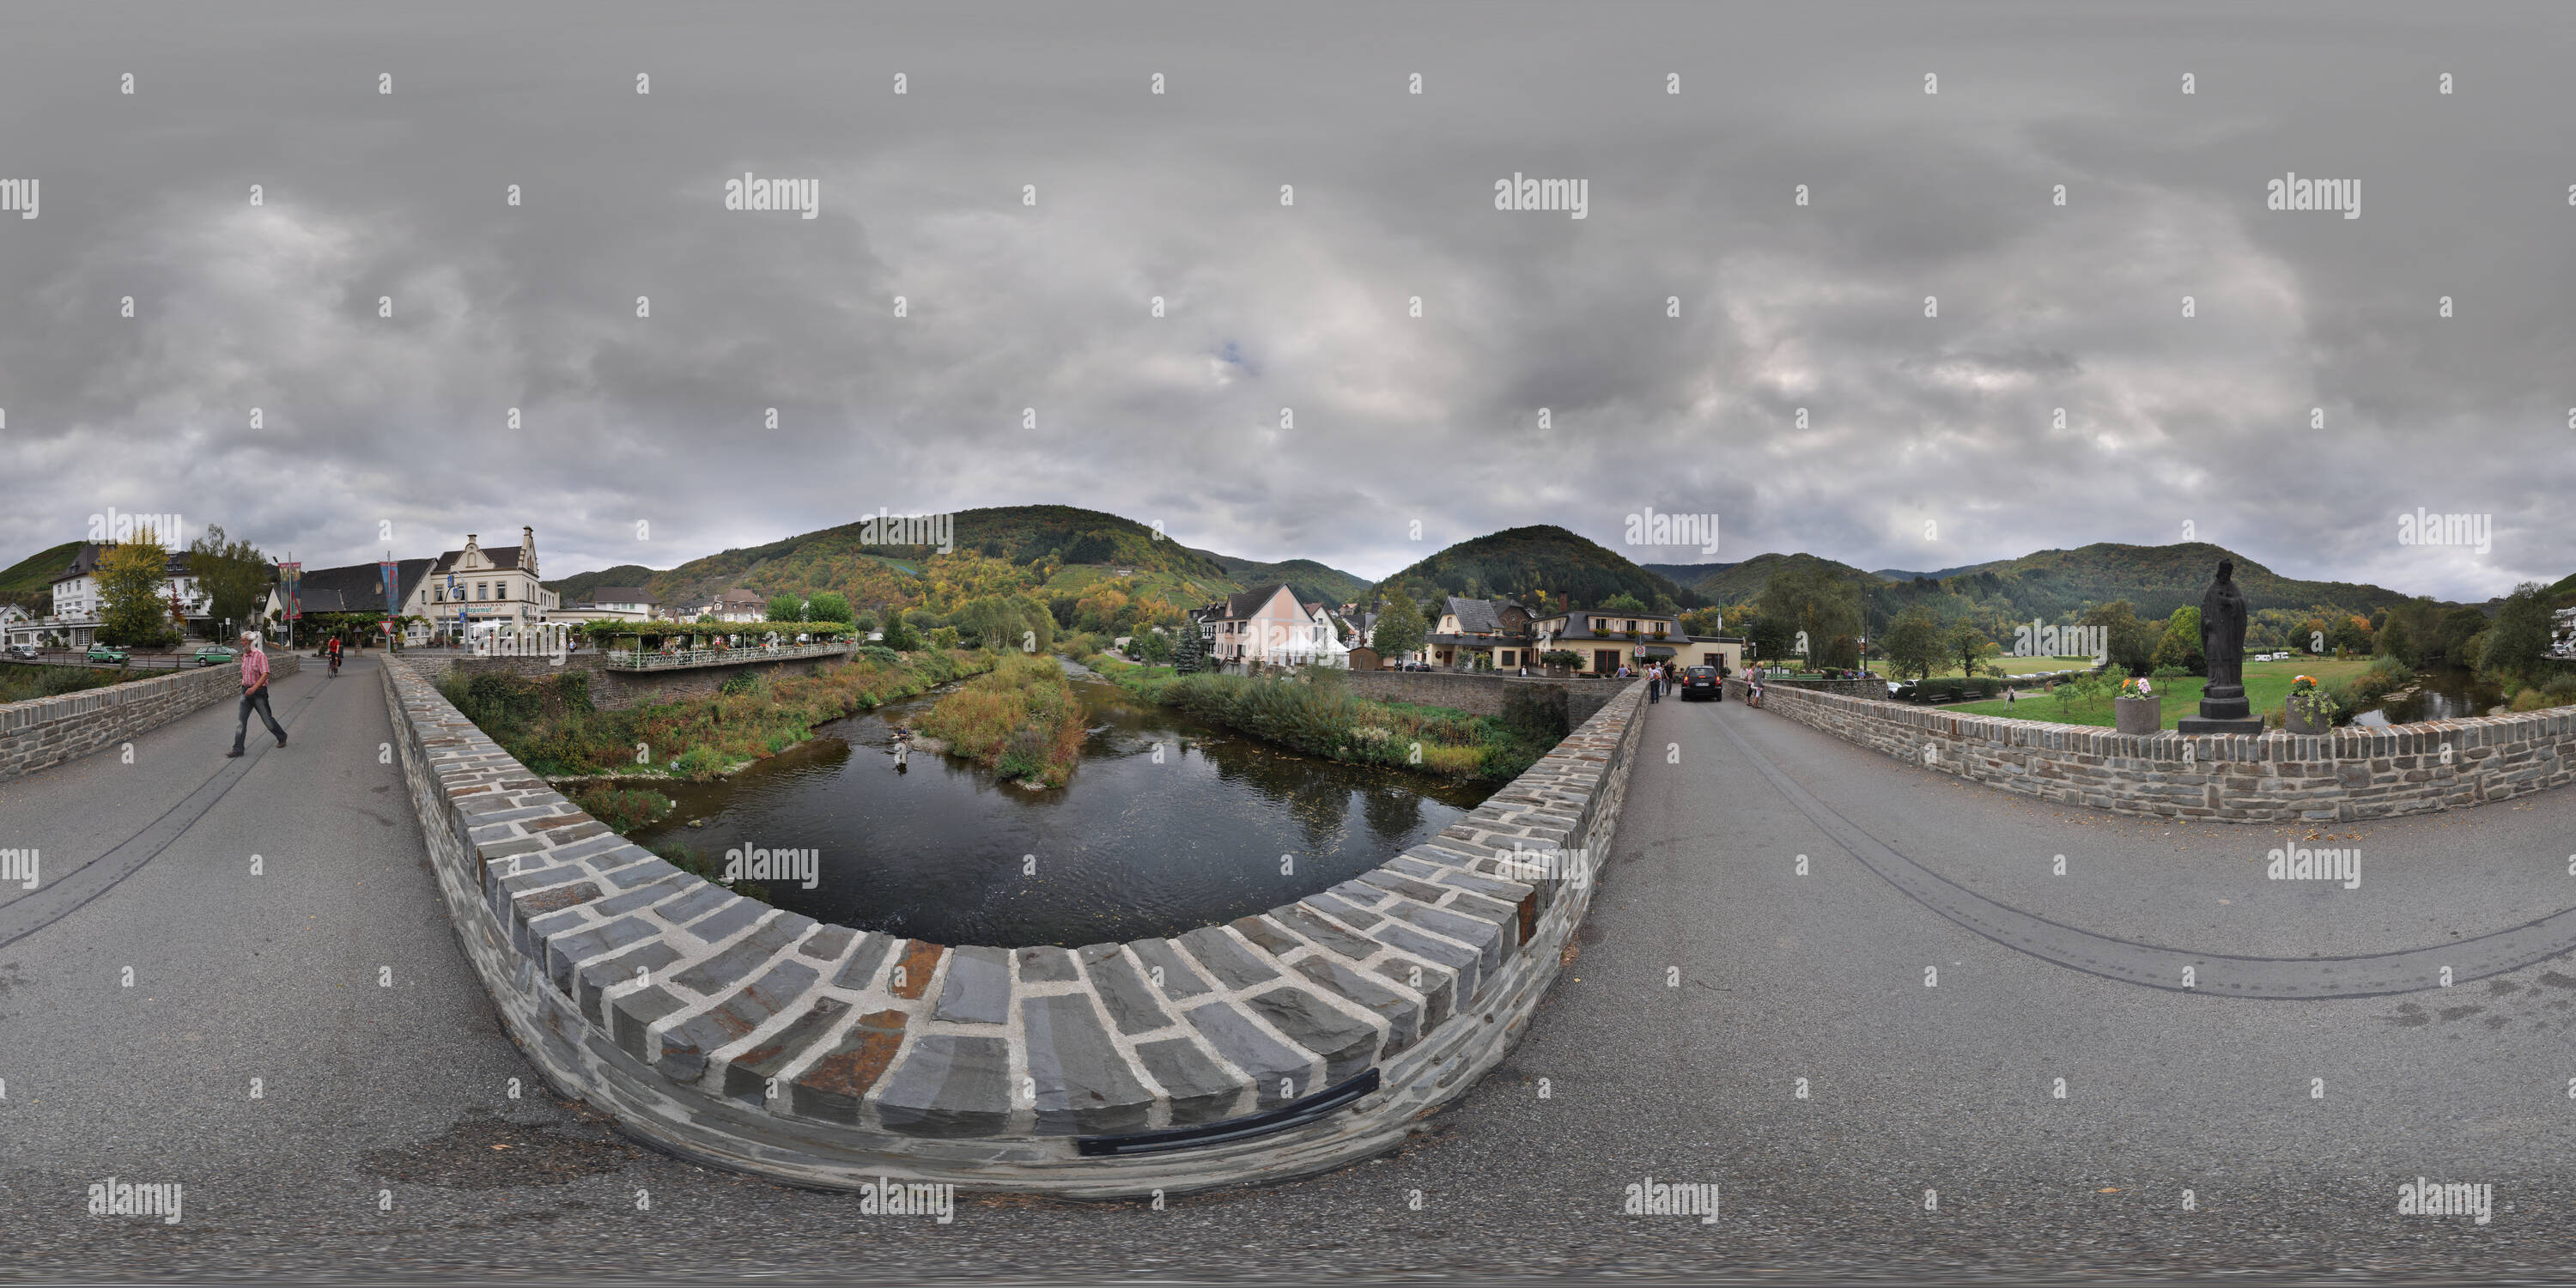 Visualizzazione panoramica a 360 gradi di Rech an der Ahr